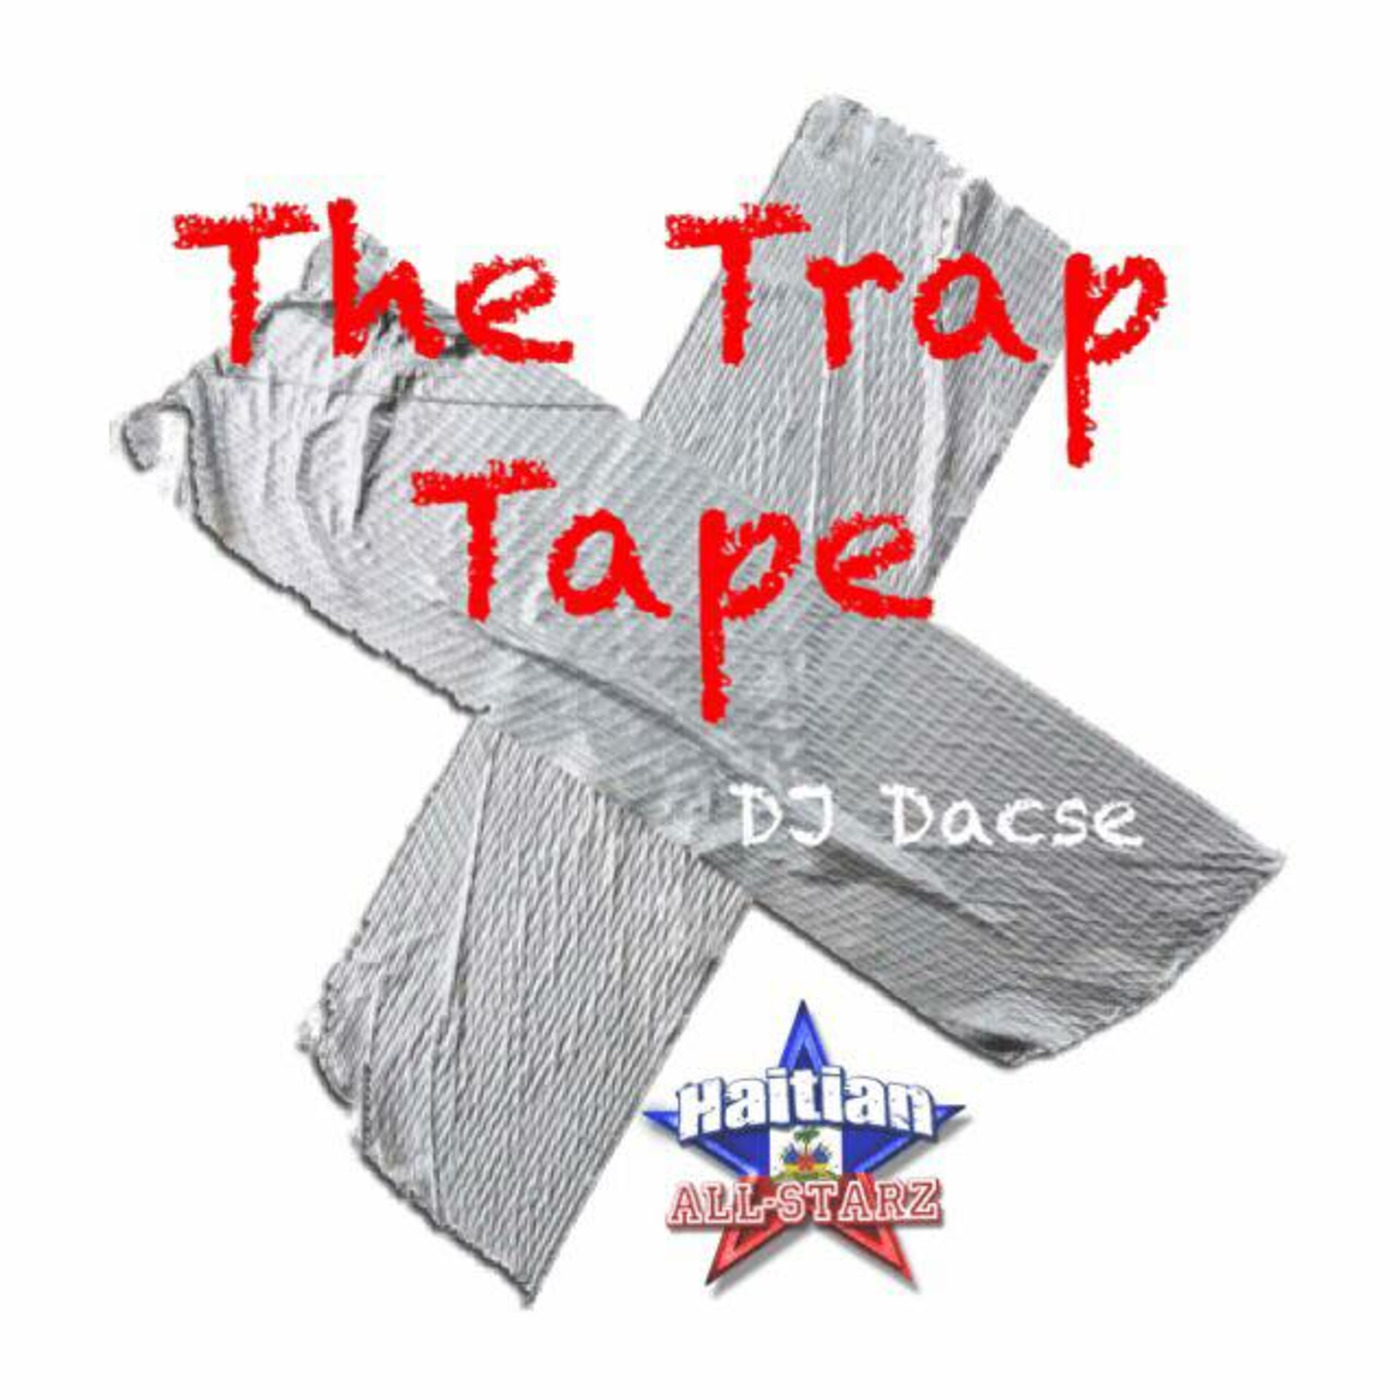 The Trap Tape - DeeJay Dacse {Haitian All-StarZ DJ}